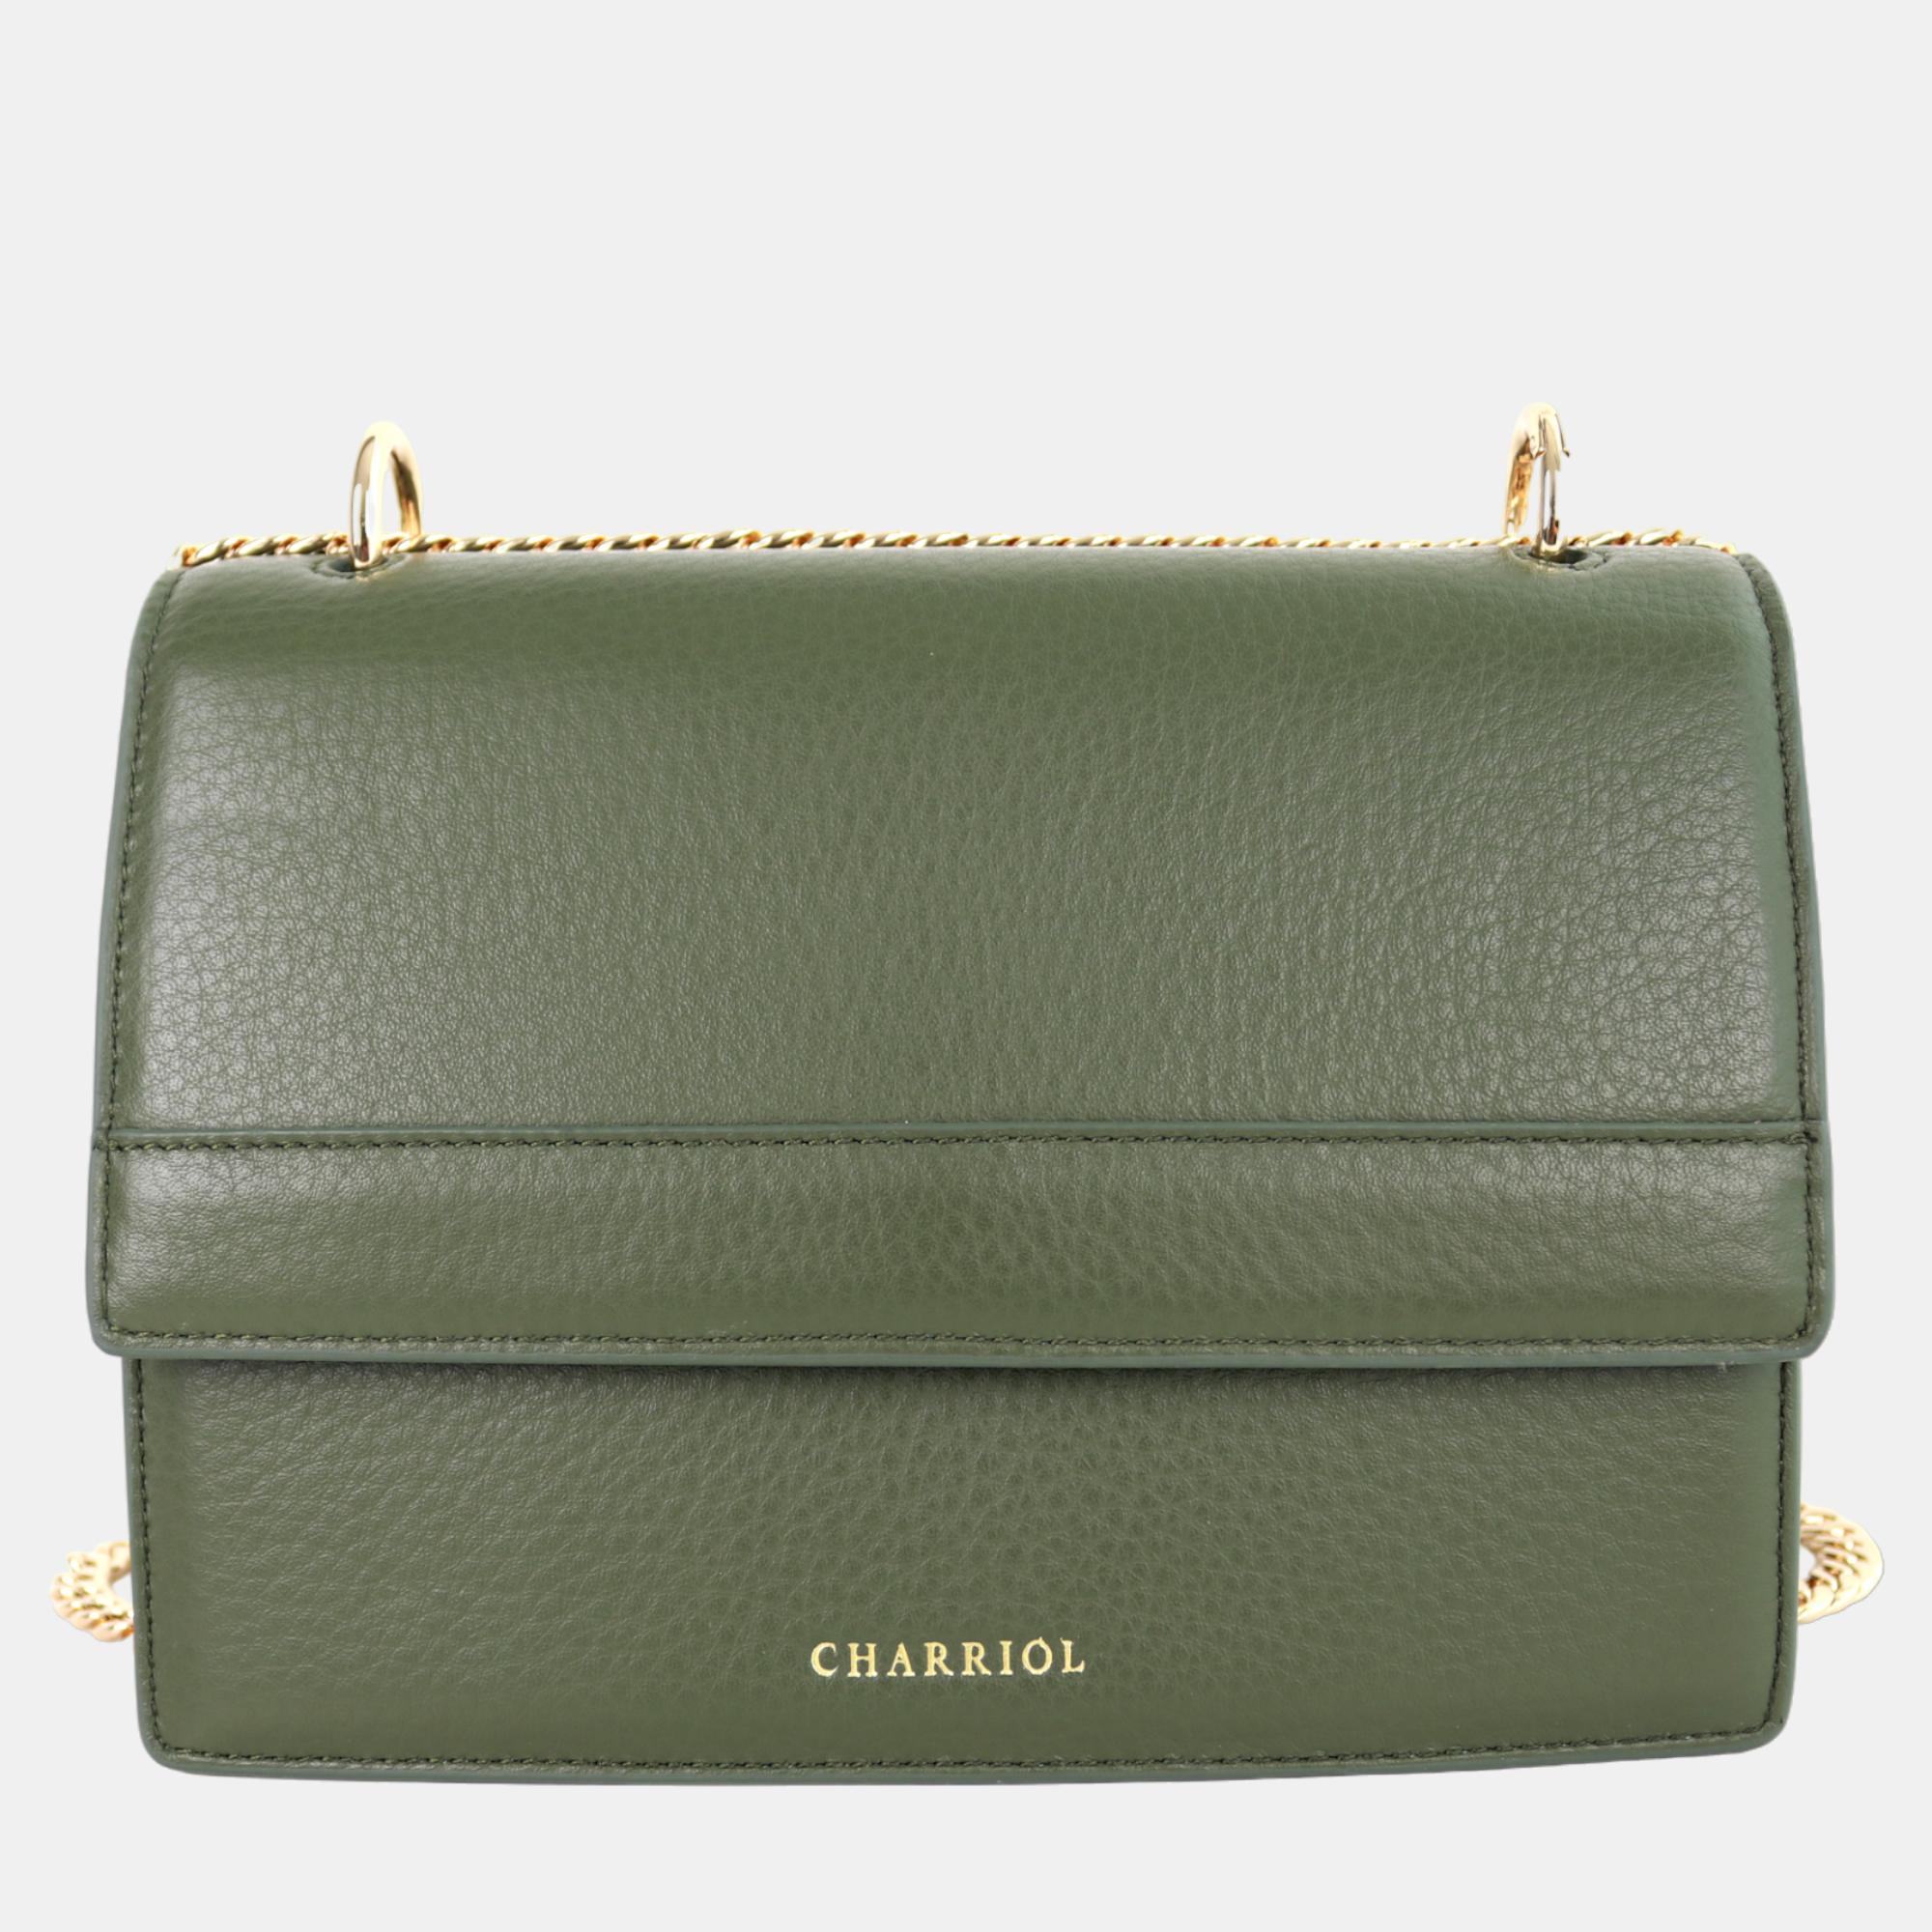 Charriol military green leather forever handbag